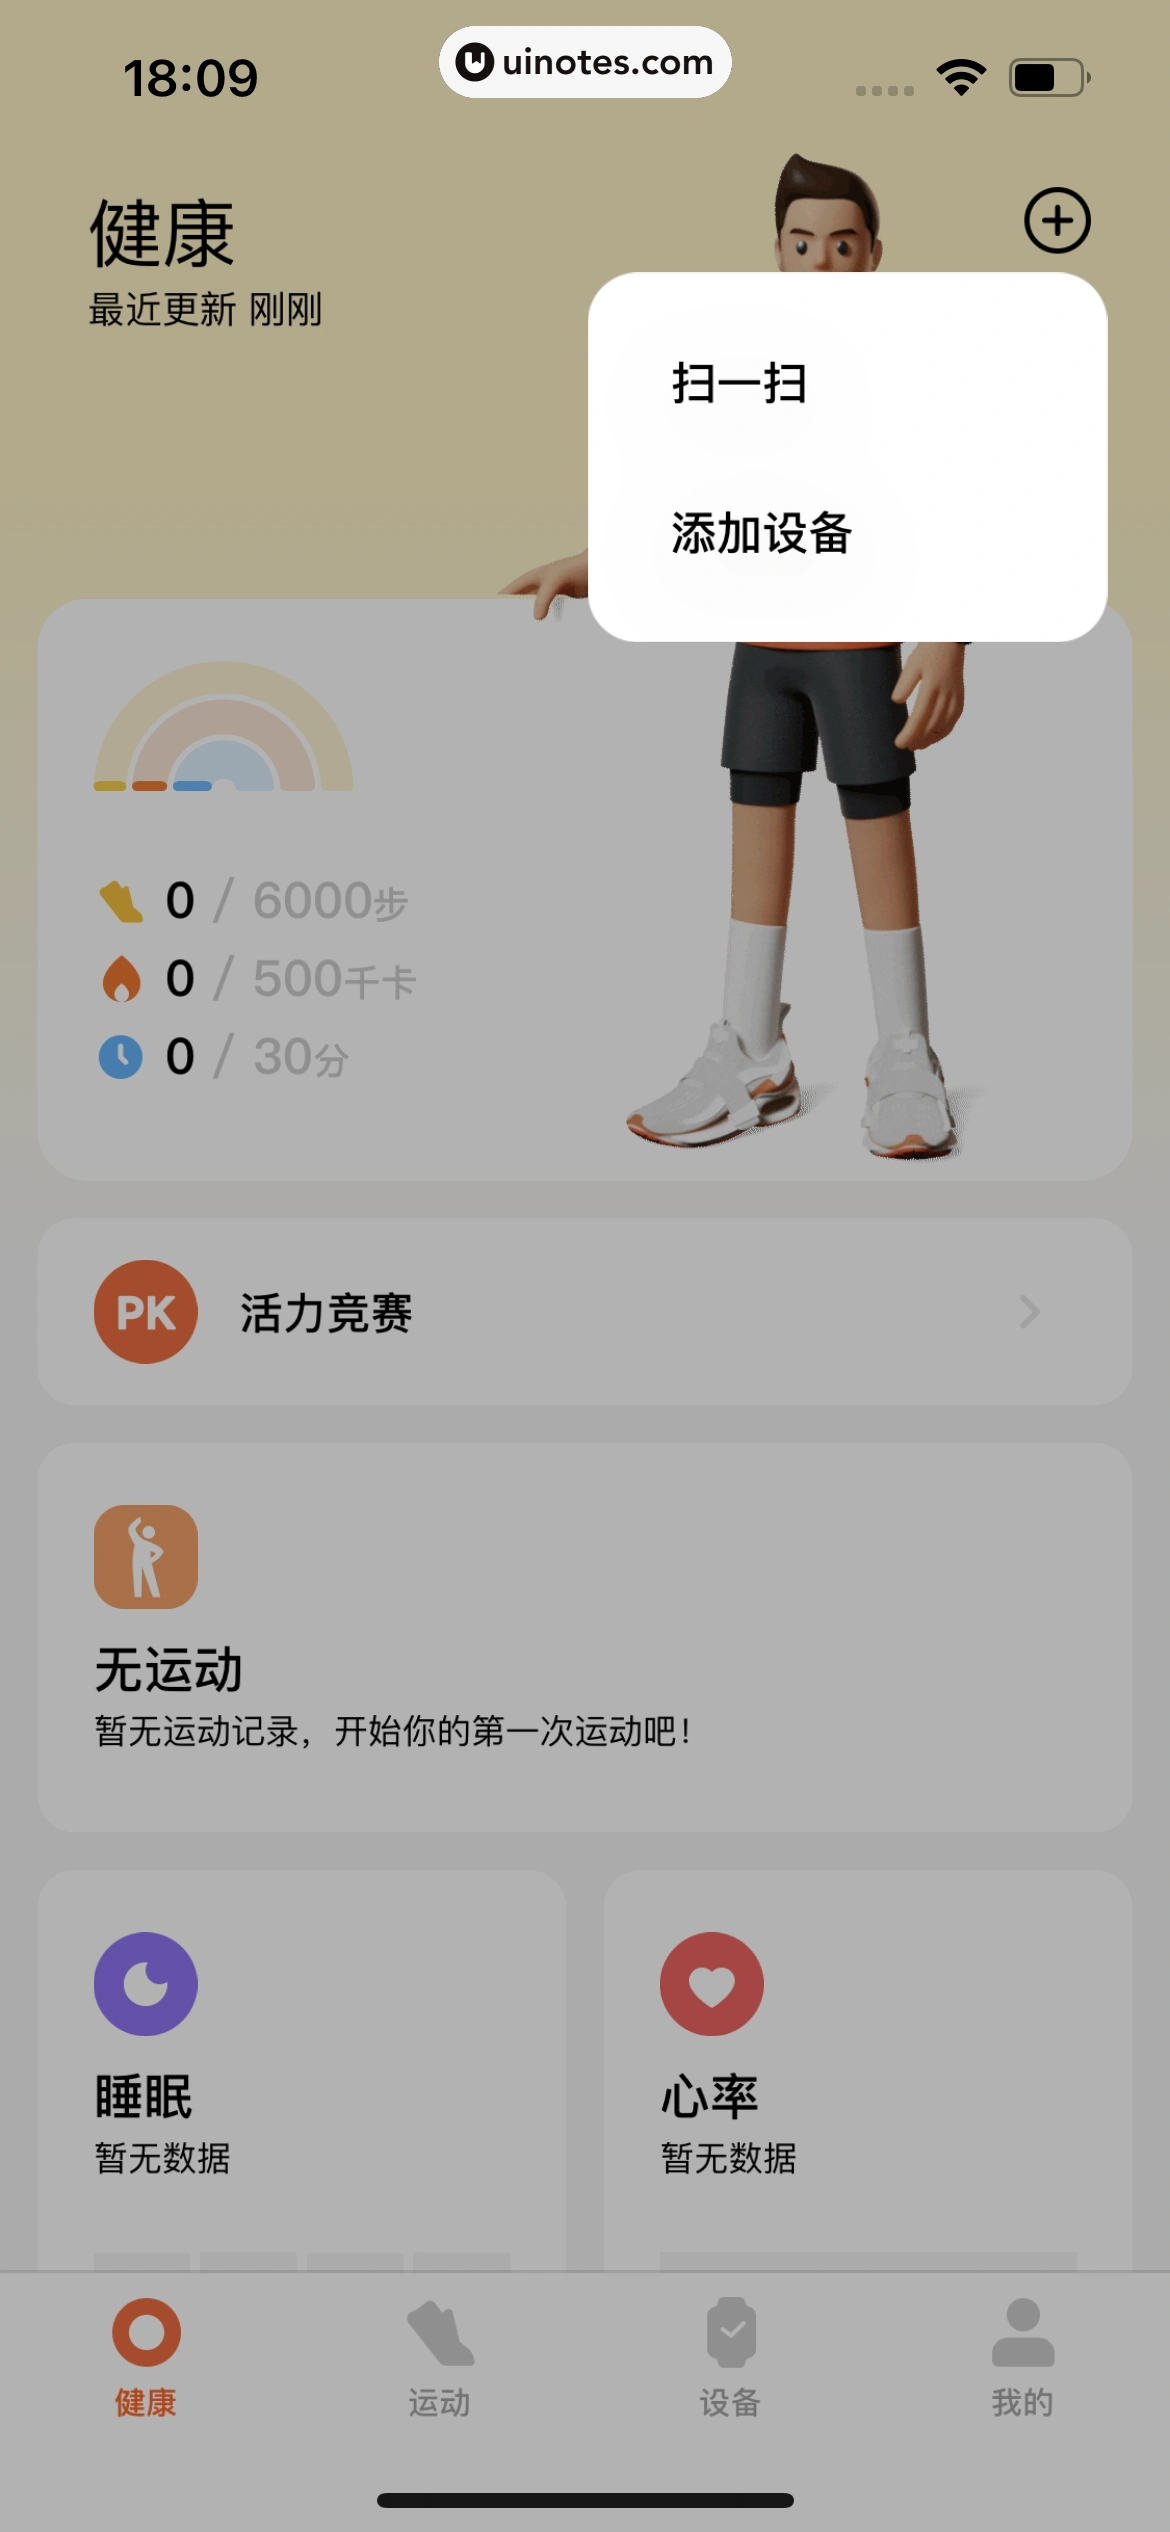 小米运动健康 App 截图 038 - UI Notes